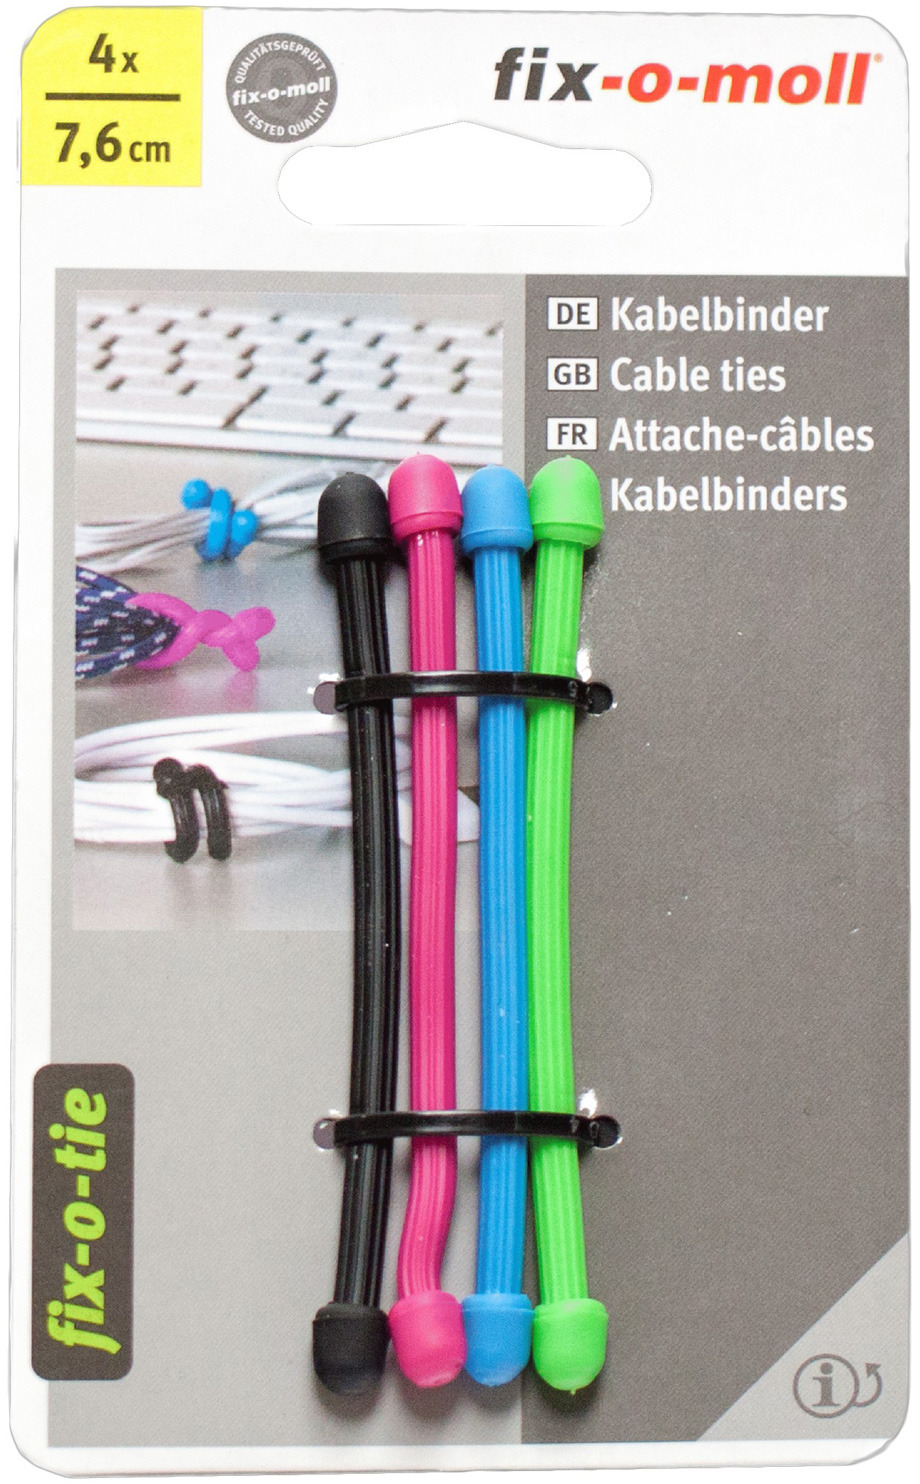 фото Cтяжка для кабеля Fix-o-moll, 7,6 см, цвет: черный, розовый, голубой, зеленый, 4 шт